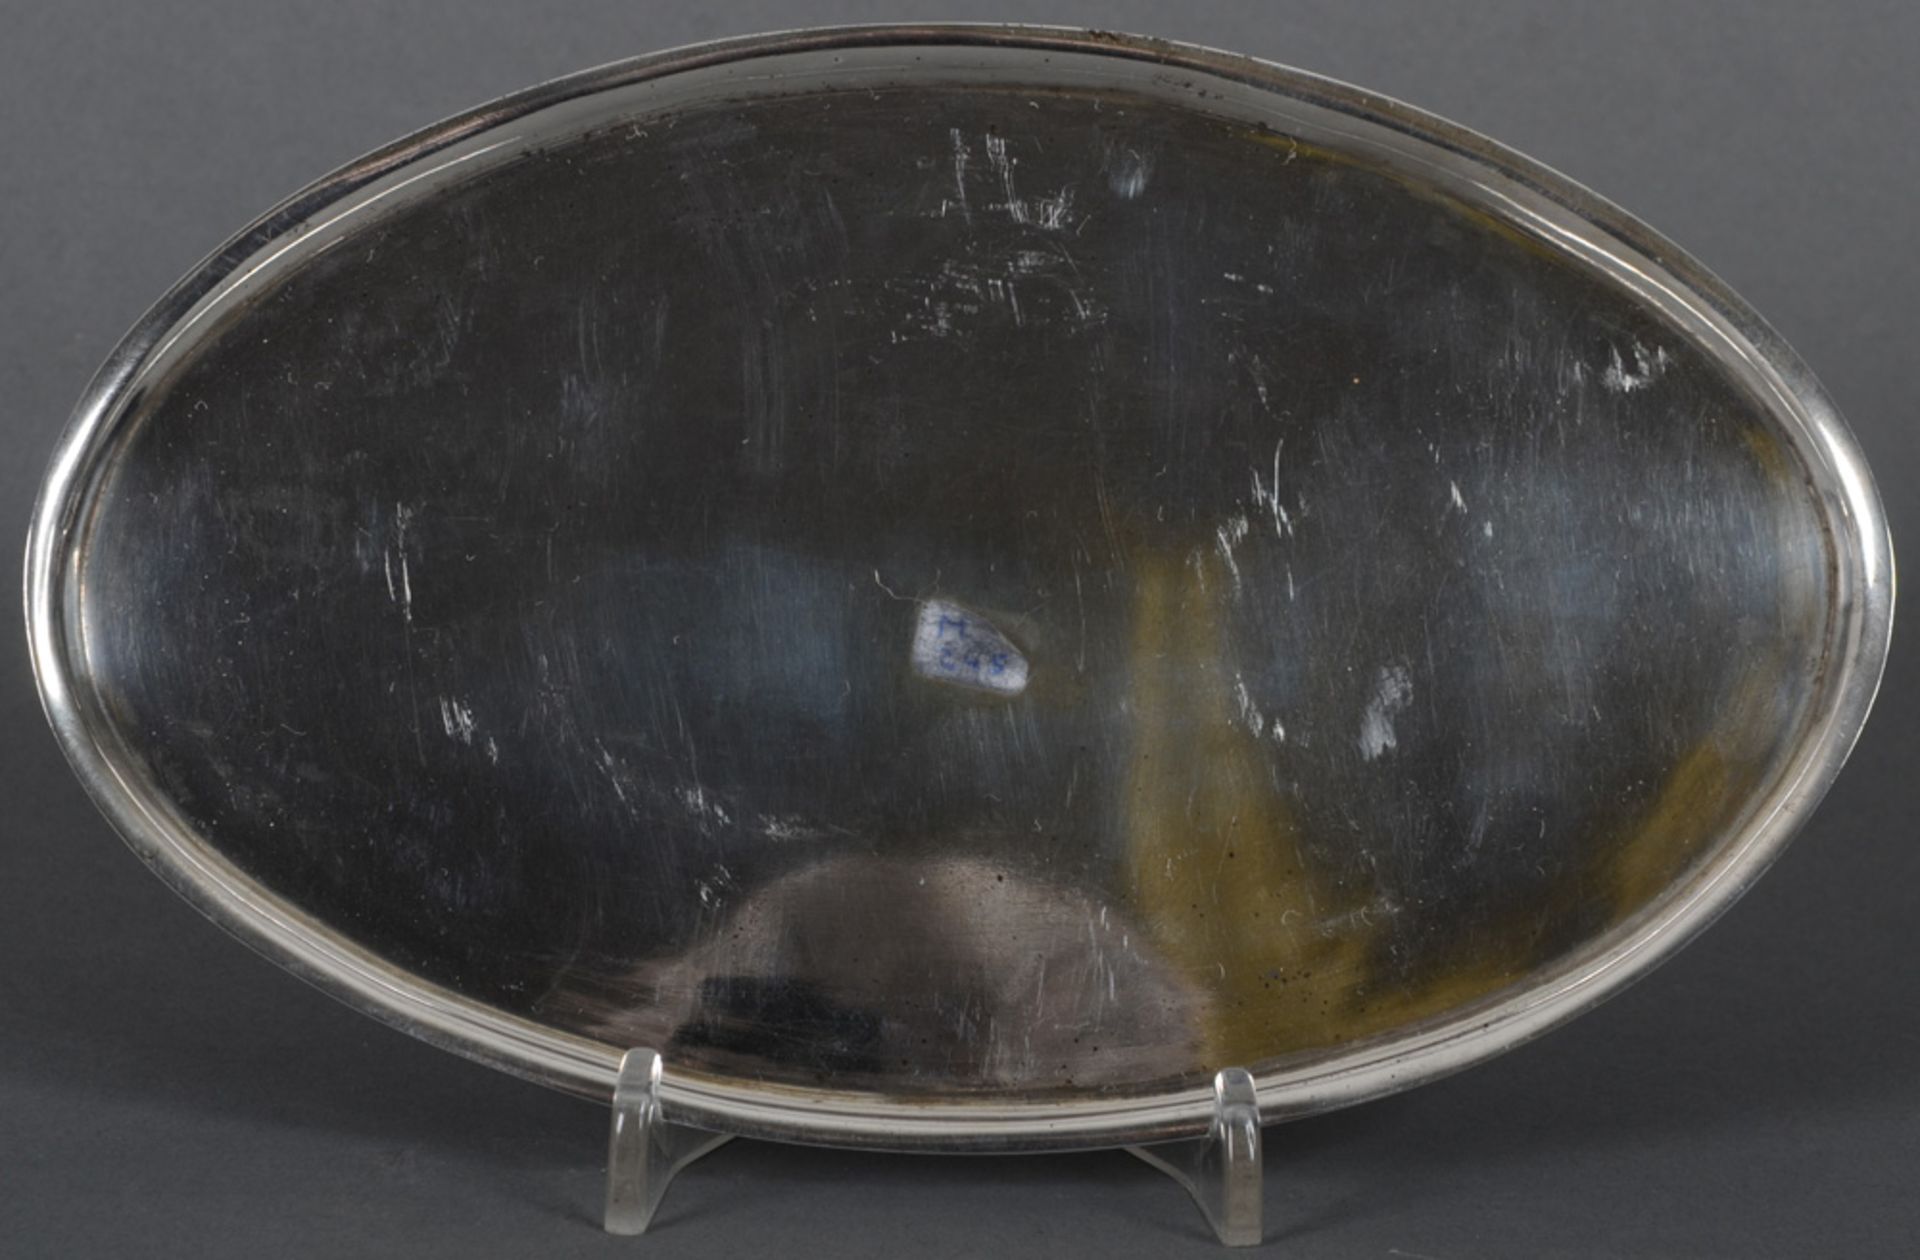 Ovales Tablett. Wien dat. 1815. Silber, ca. 130 g, mit steigendem Lippenrand; verso mit Stadtpunze u